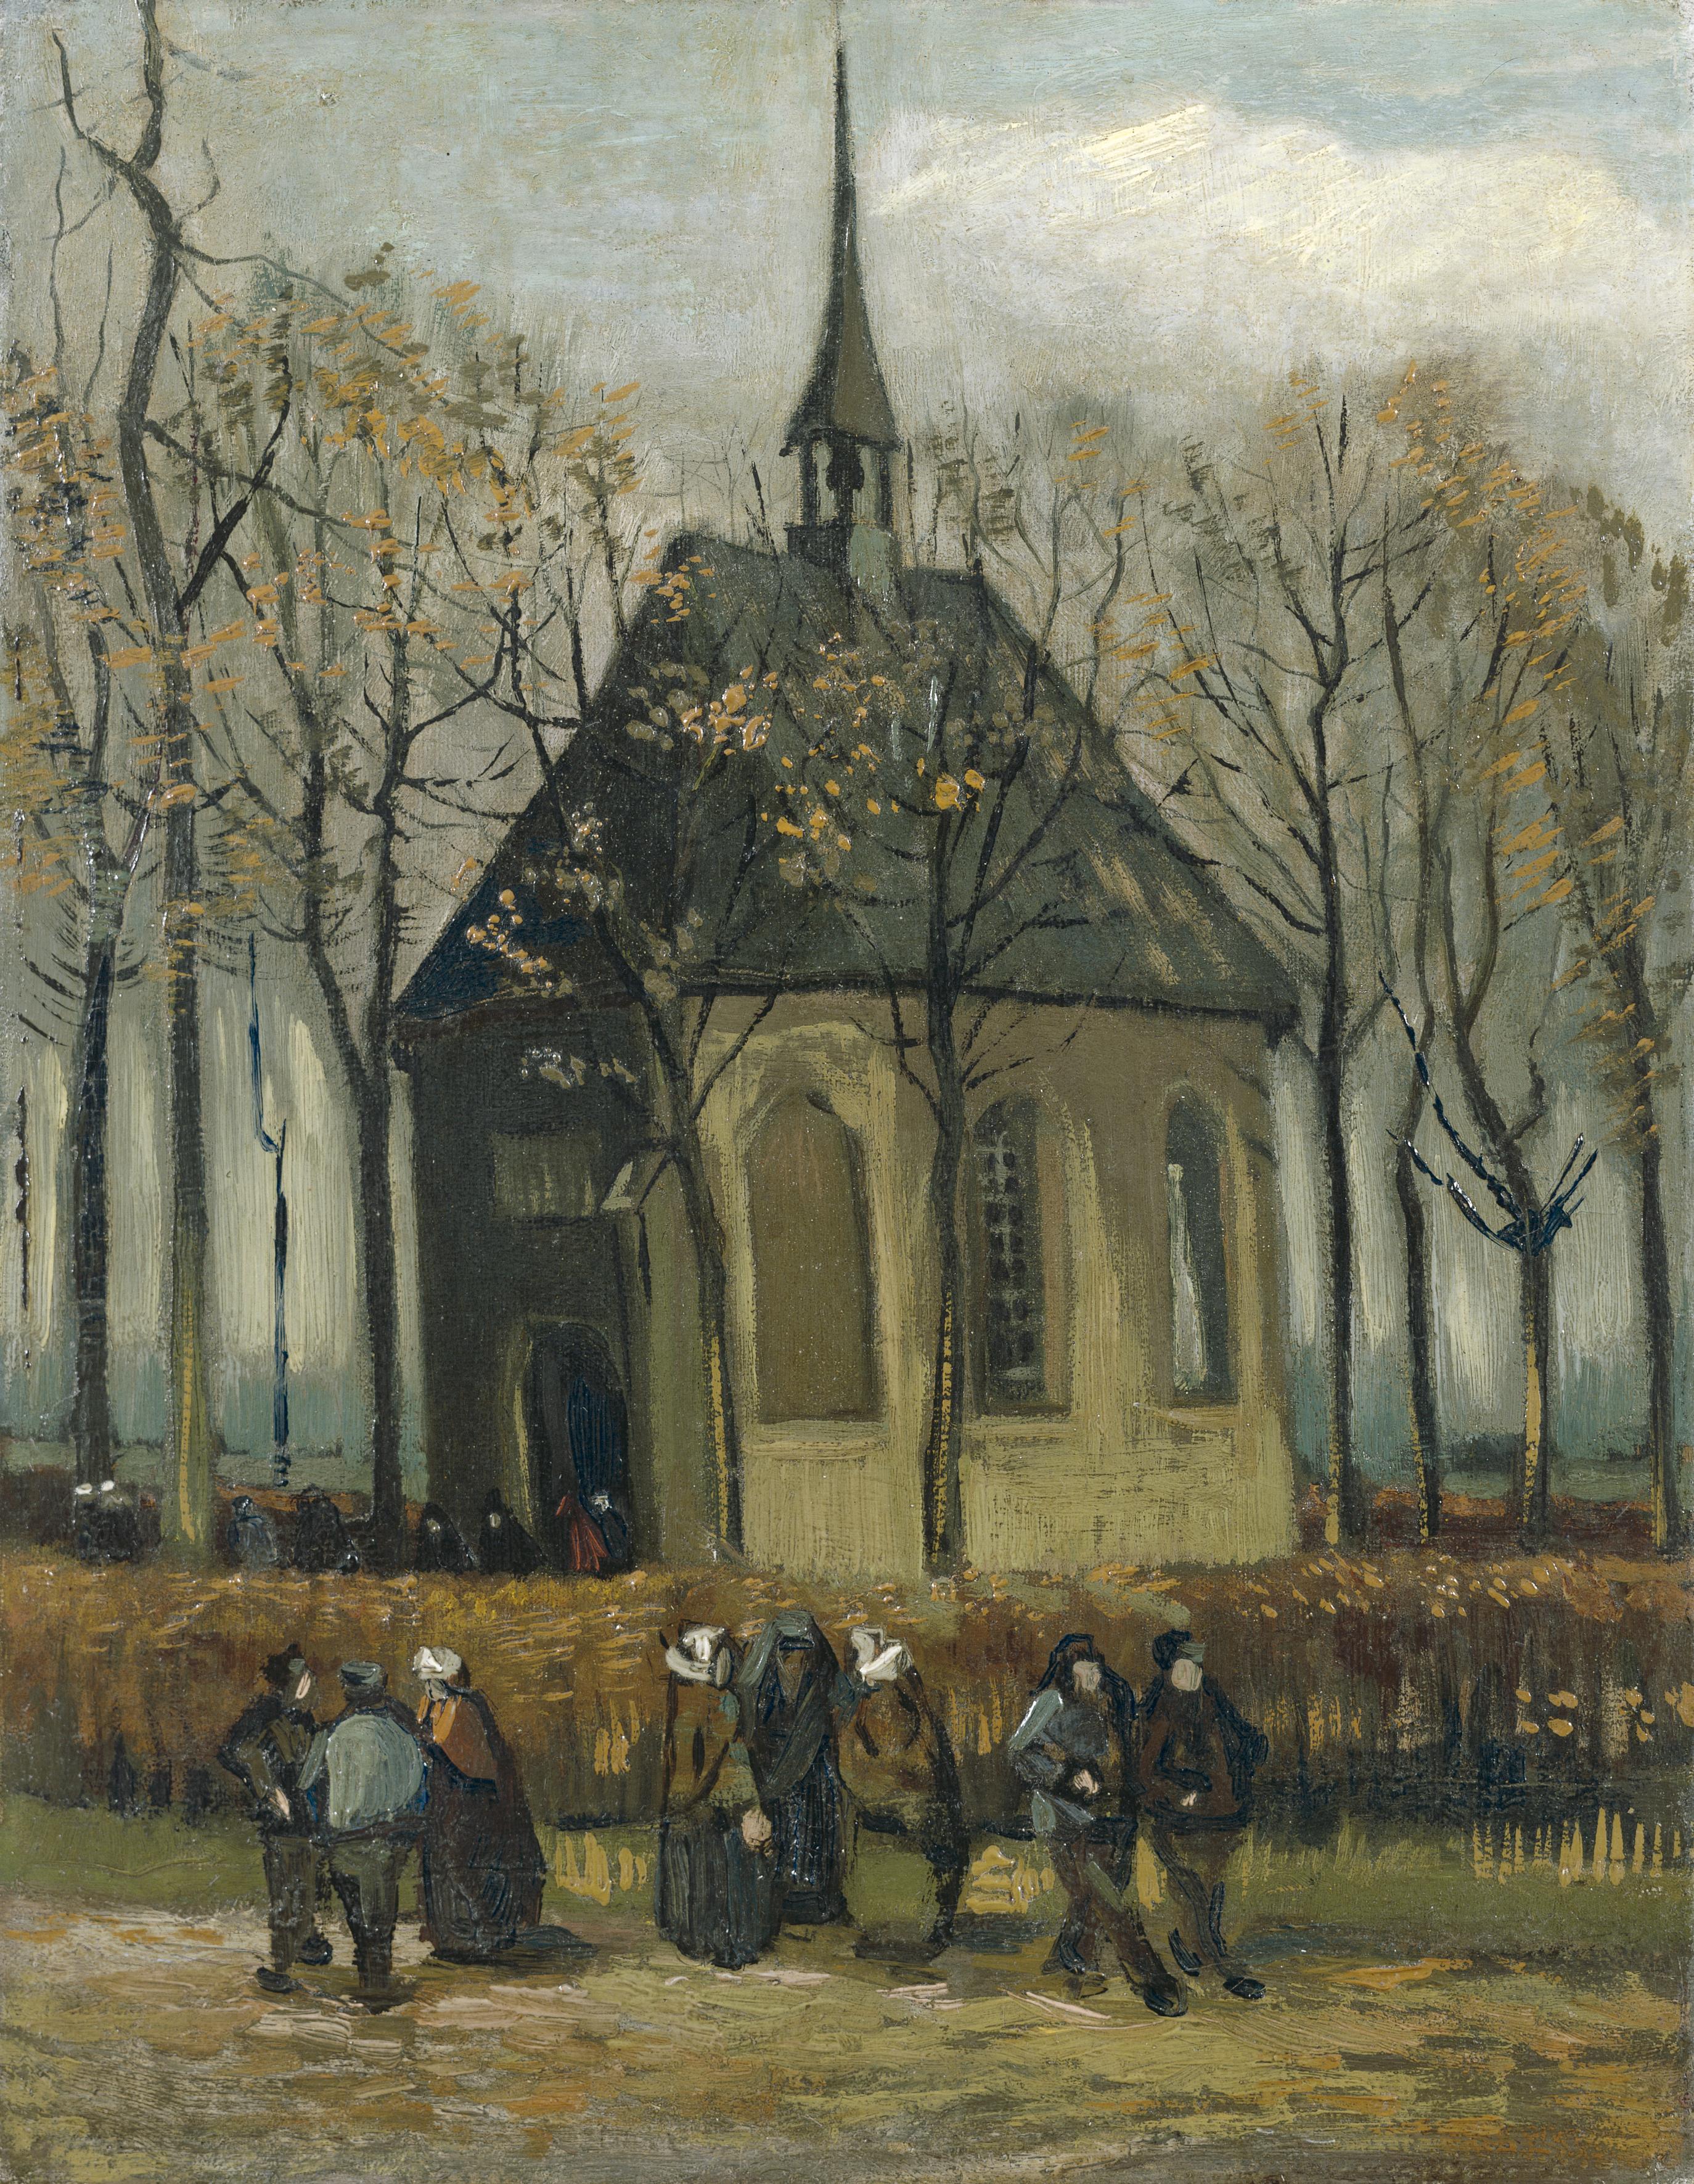 Quadro di Van Gogh rubato in Olanda. Era in un museo chiuso per coronavirus  - la Repubblica